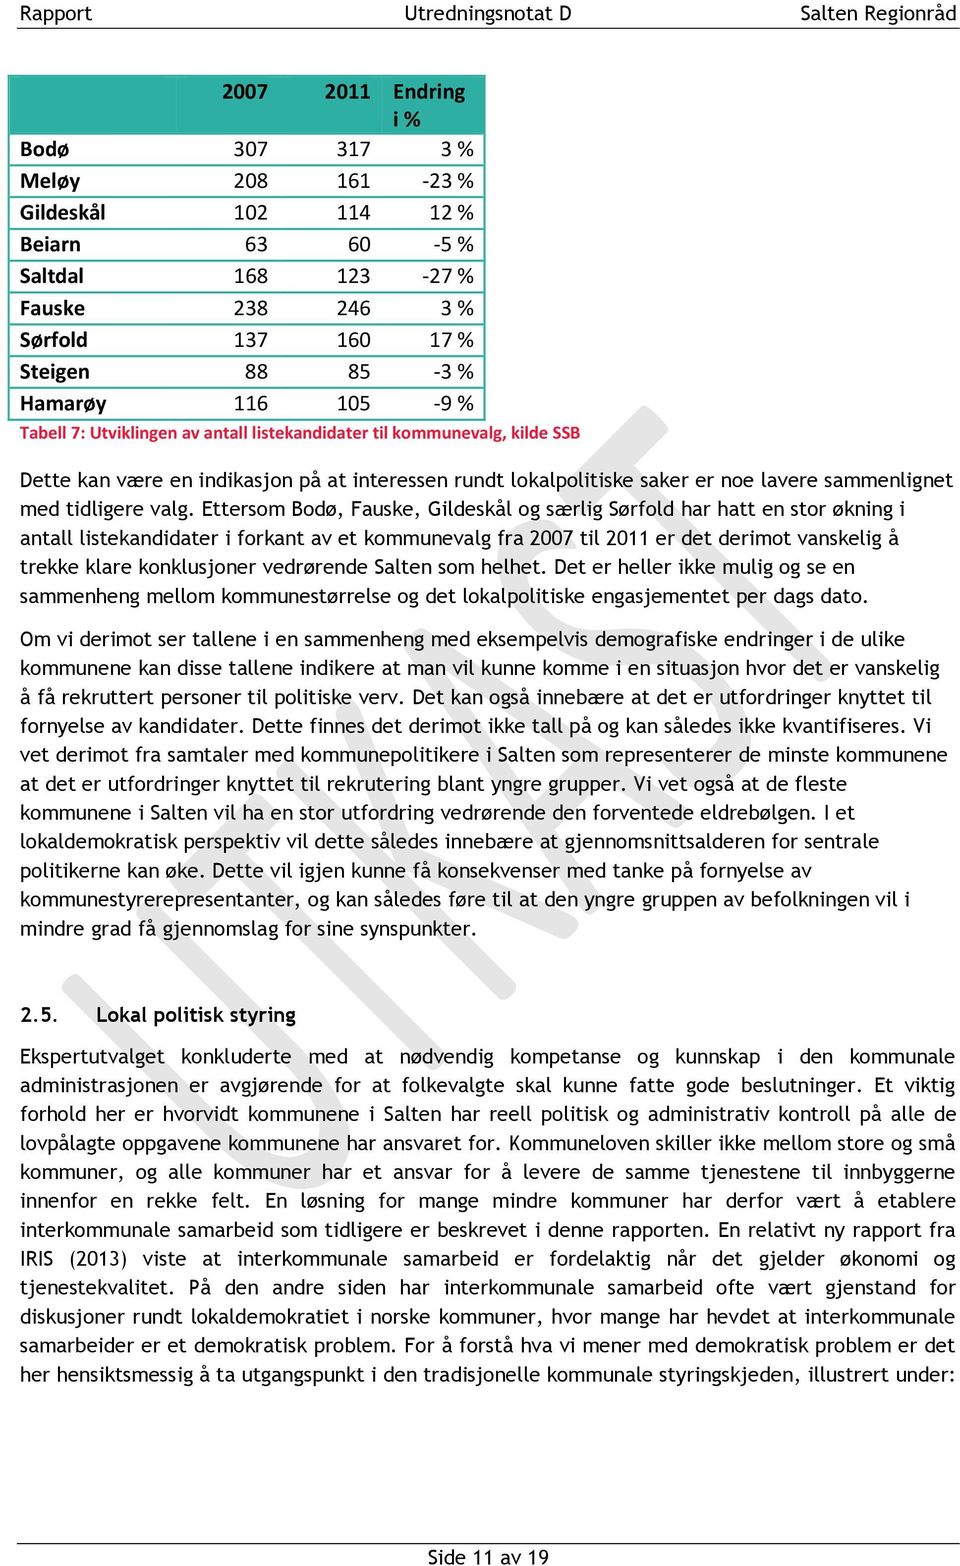 Ettersom Bodø, Fauske, Gildeskål og særlig Sørfold har hatt en stor økning i antall listekandidater i forkant av et kommunevalg fra 2007 til 2011 er det derimot vanskelig å trekke klare konklusjoner